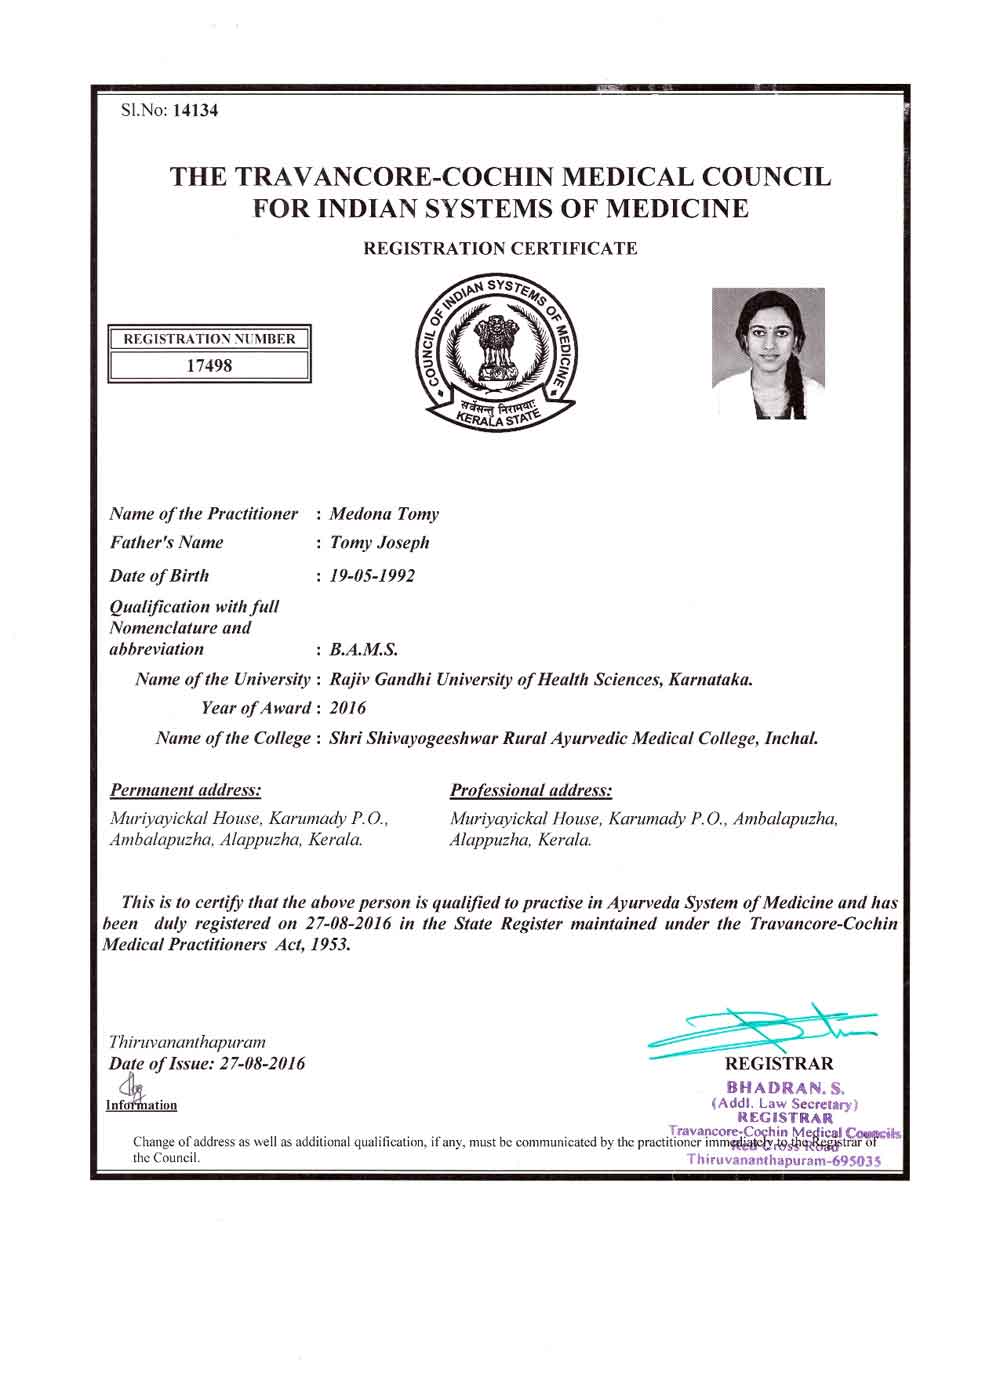 Сертификат B.A.M.S медицинского университета Раджива Ганди в Карнатаке, Медона Томи